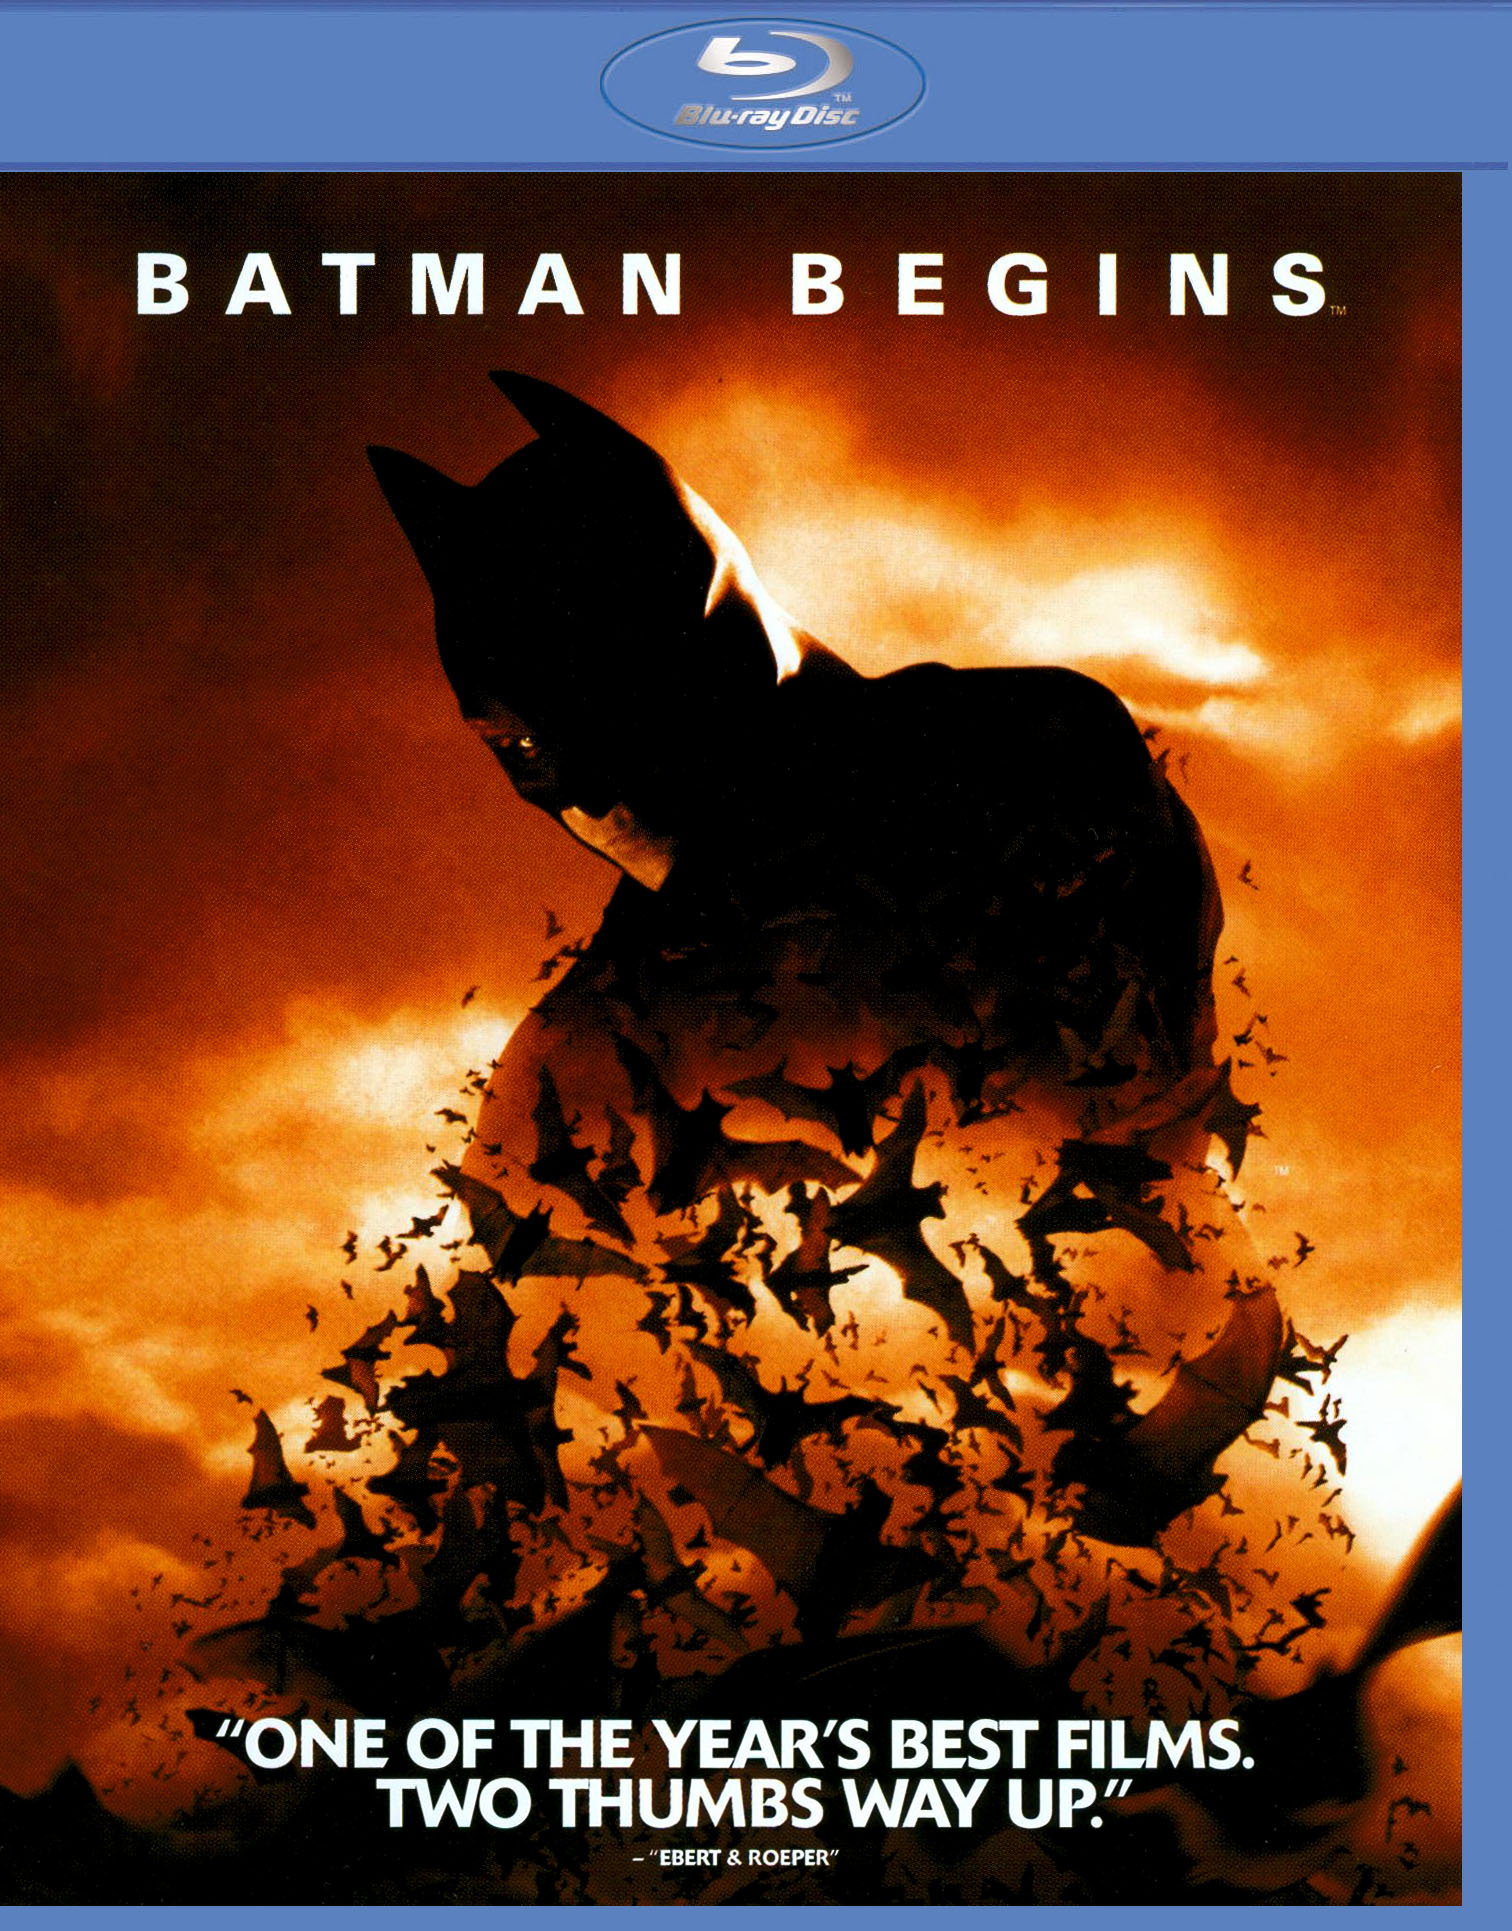 Batman Begins [Blu-ray] [2005] - Best Buy